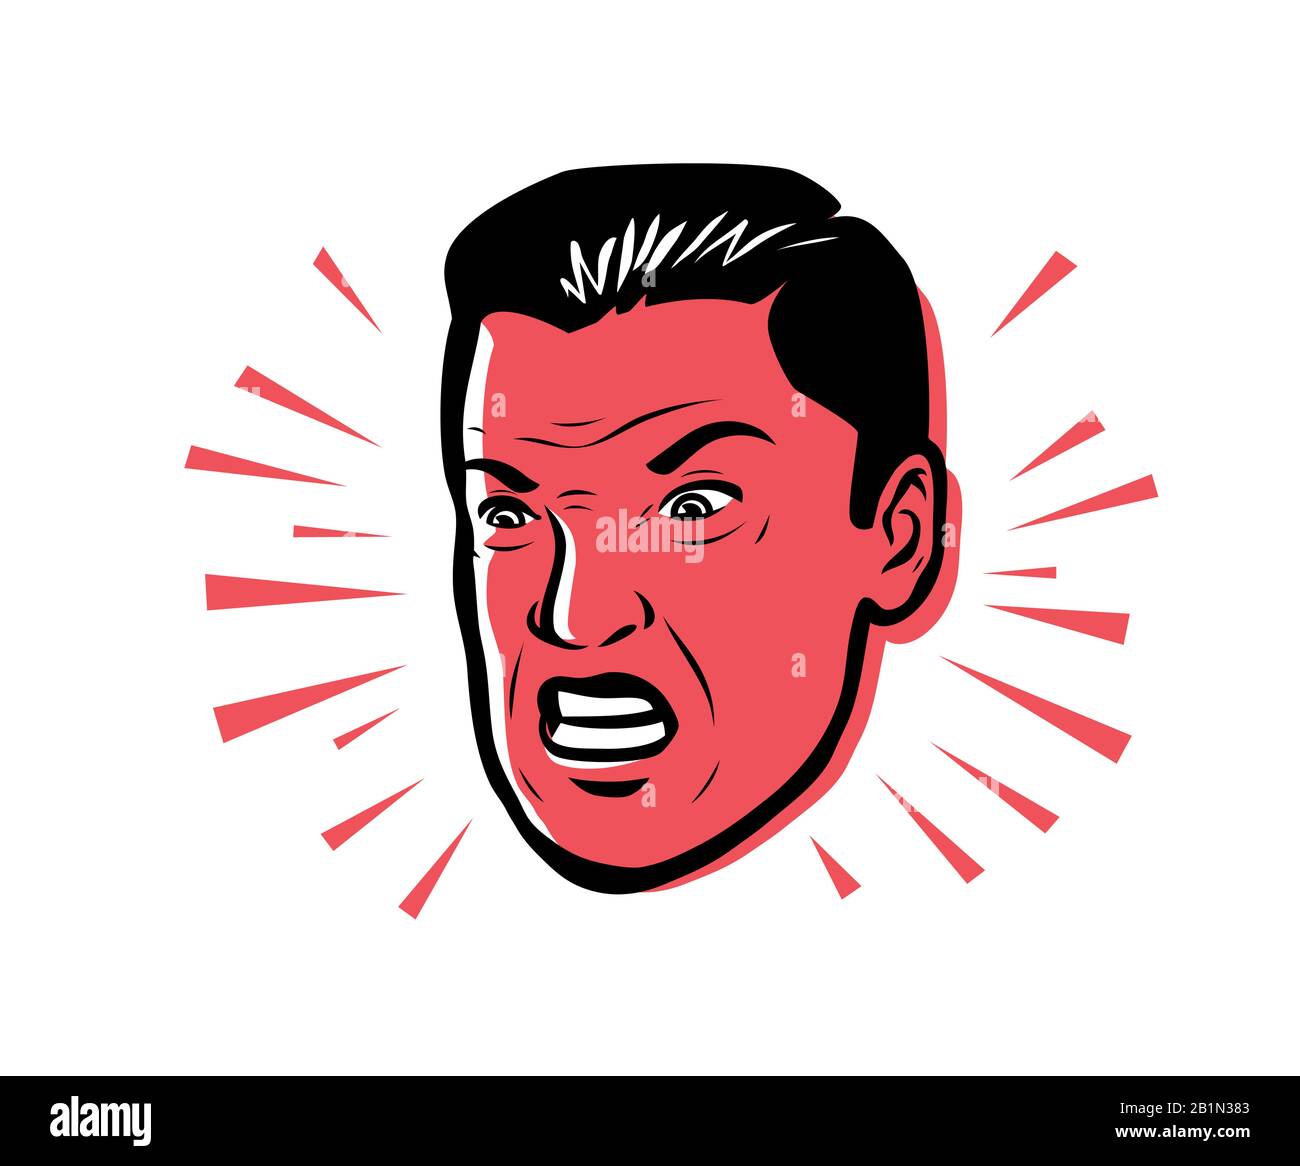 Uomo arrabbiato furioso. Immagine vettoriale stile pop art retro Illustrazione Vettoriale